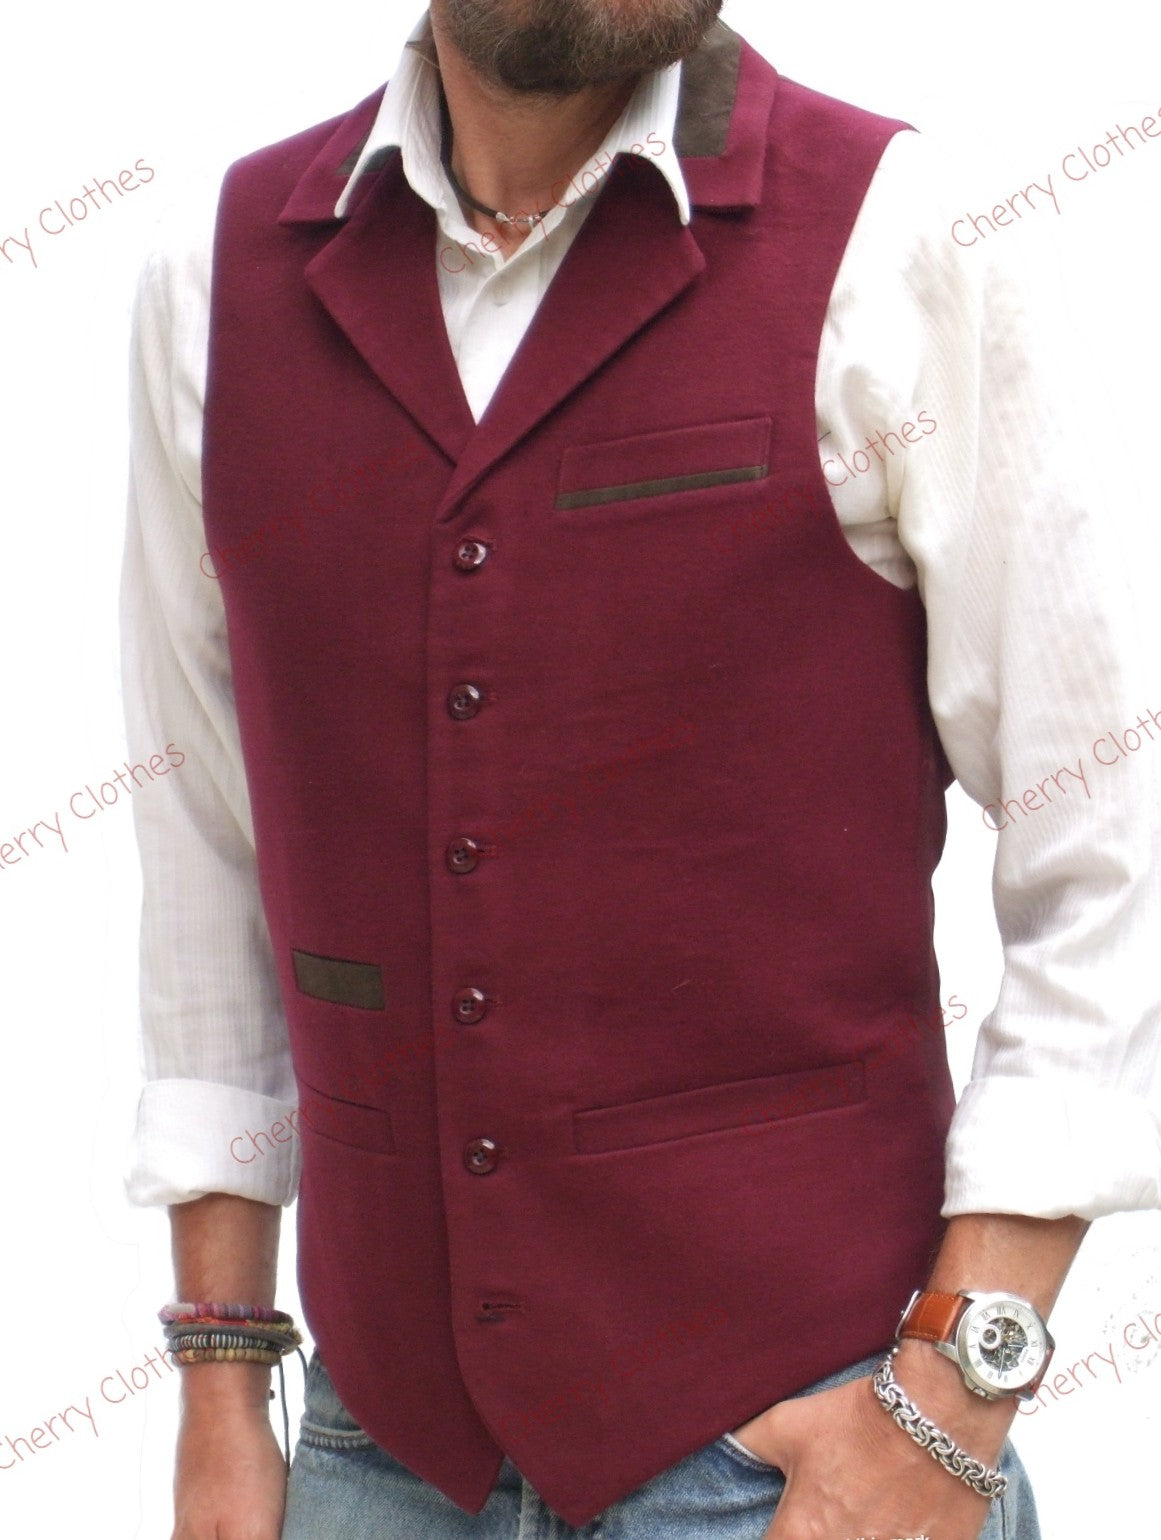 Mens SLIM FIT Dress Vest BowTie Solid Burgundy Color Bow Tie Hanky Set sz  XS at Amazon Men's Clothing store